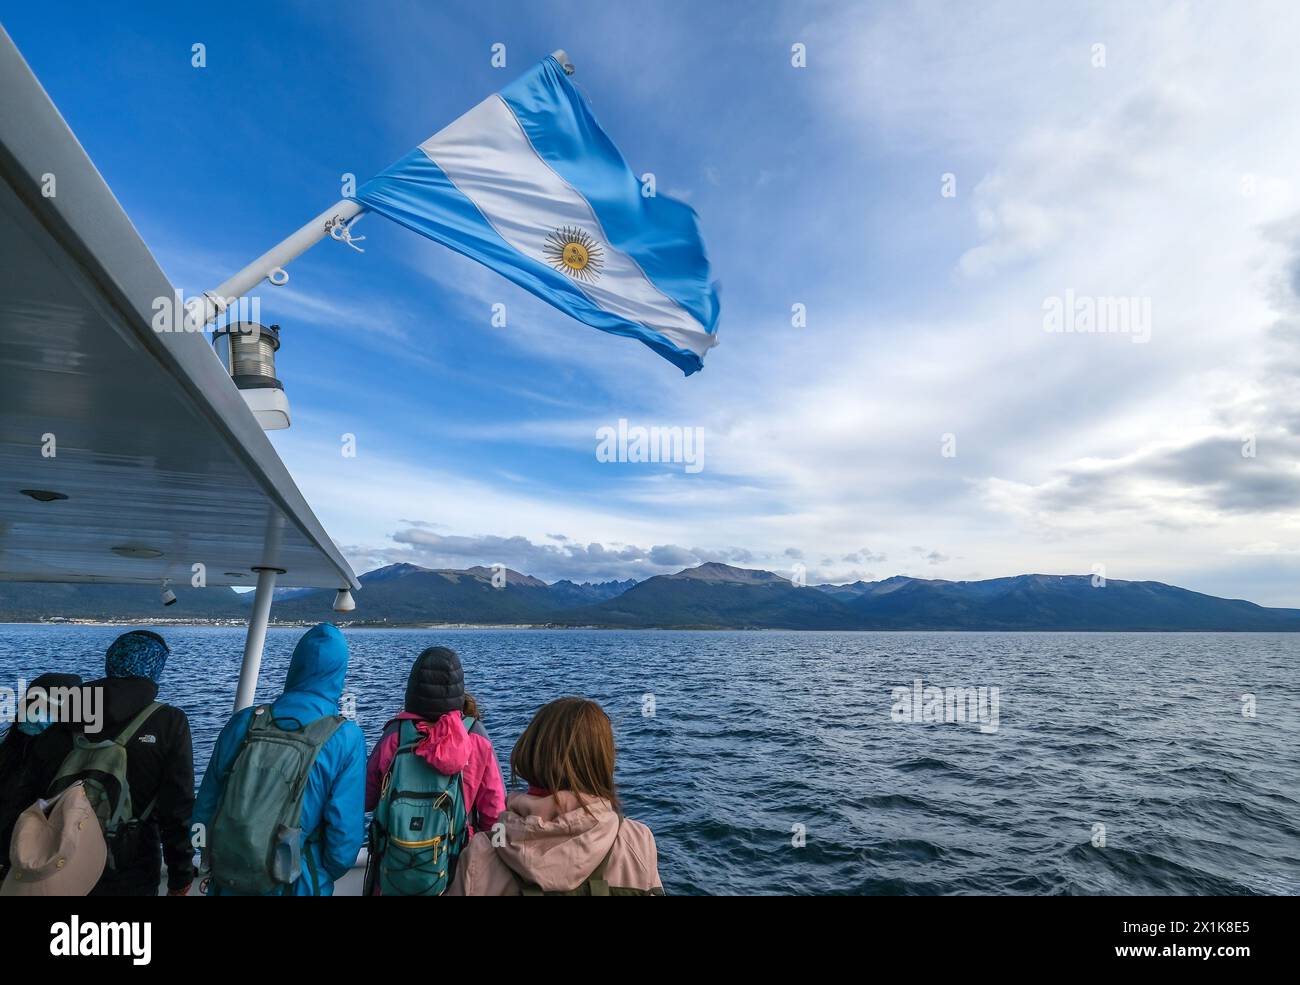 Ushuaia, Tierra del Fuego, Argentinien - Touristen auf einem Ausflugsboot unter argentinischer Flagge im Beagle-Kanal, der Beagle-Kanal ist eine natürliche Wasserstraße Stockfoto